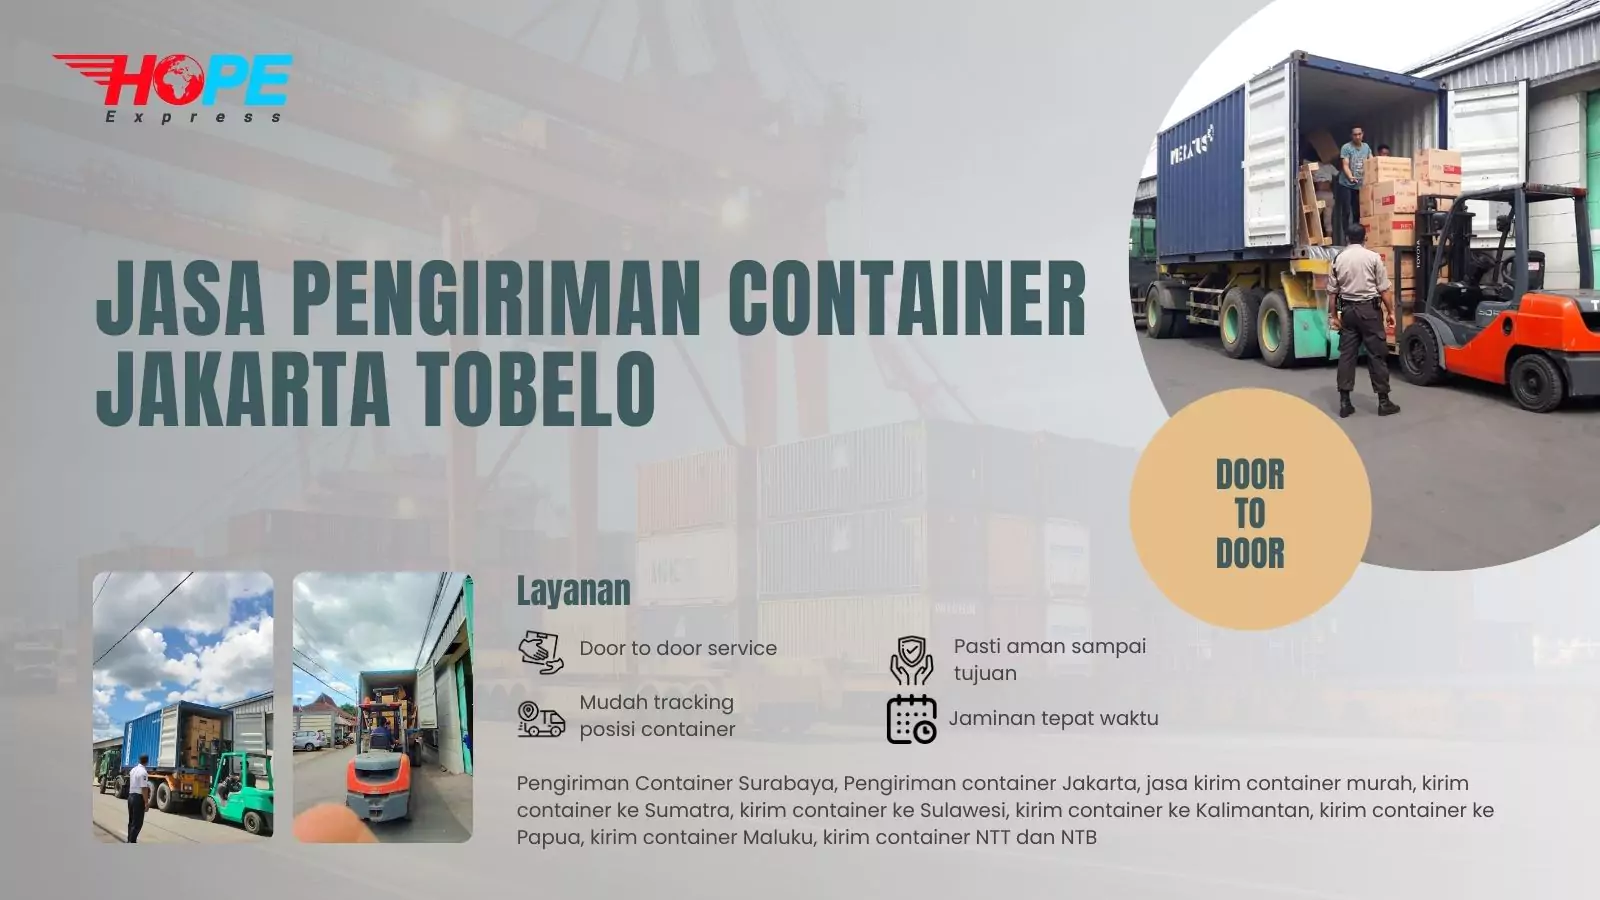 Jasa Pengiriman Container Jakarta Tobelo